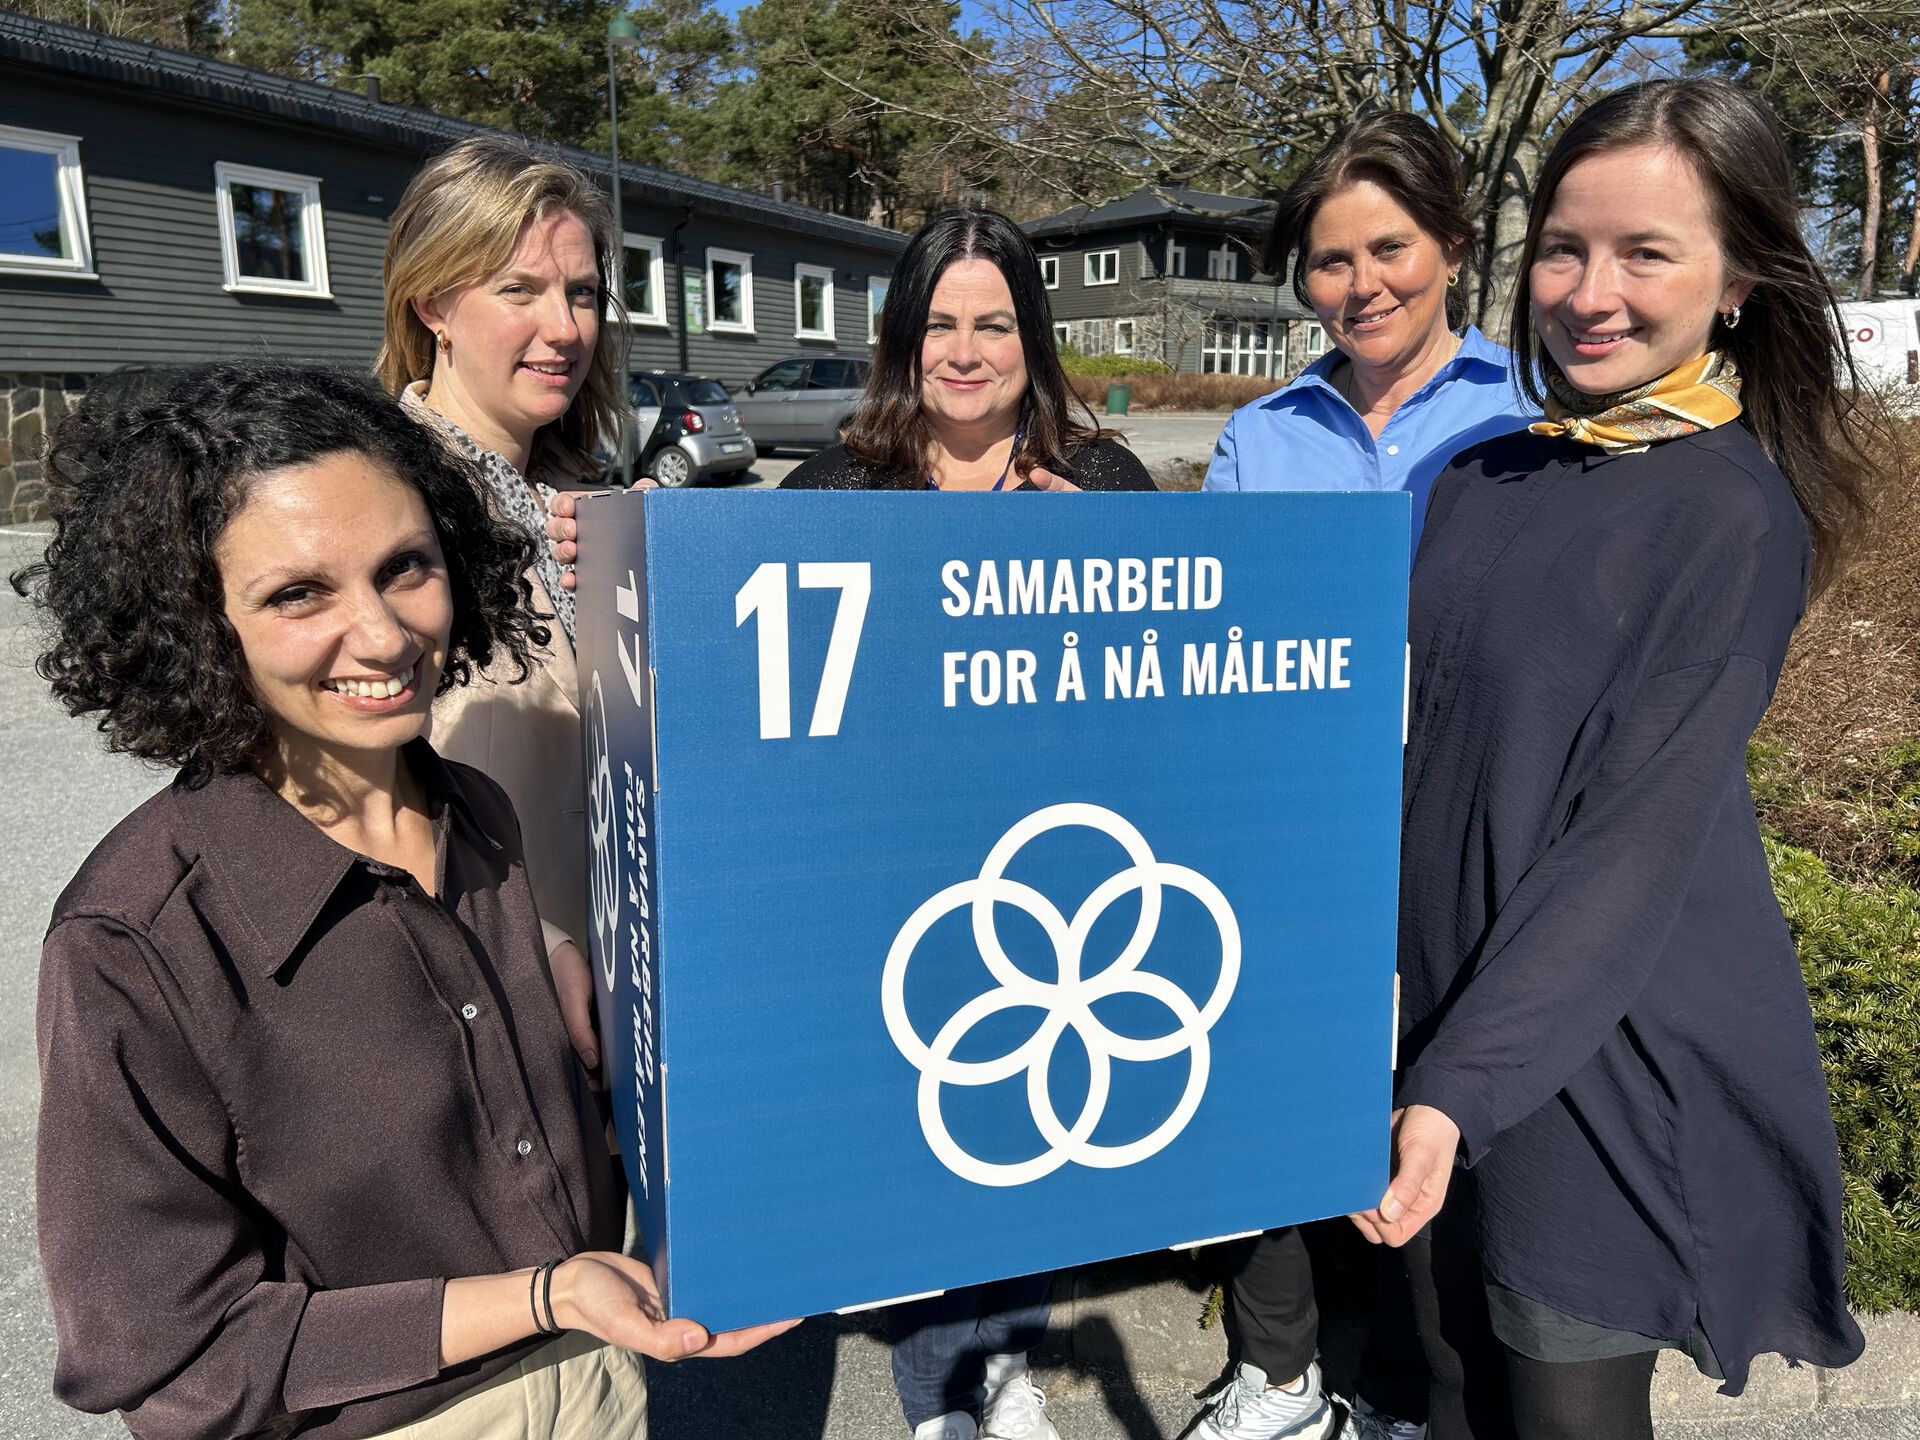 De fire personene på bildet holder frem en boks med FNs bærekraftmål nummer 17: Samarbeid for å nå målene.